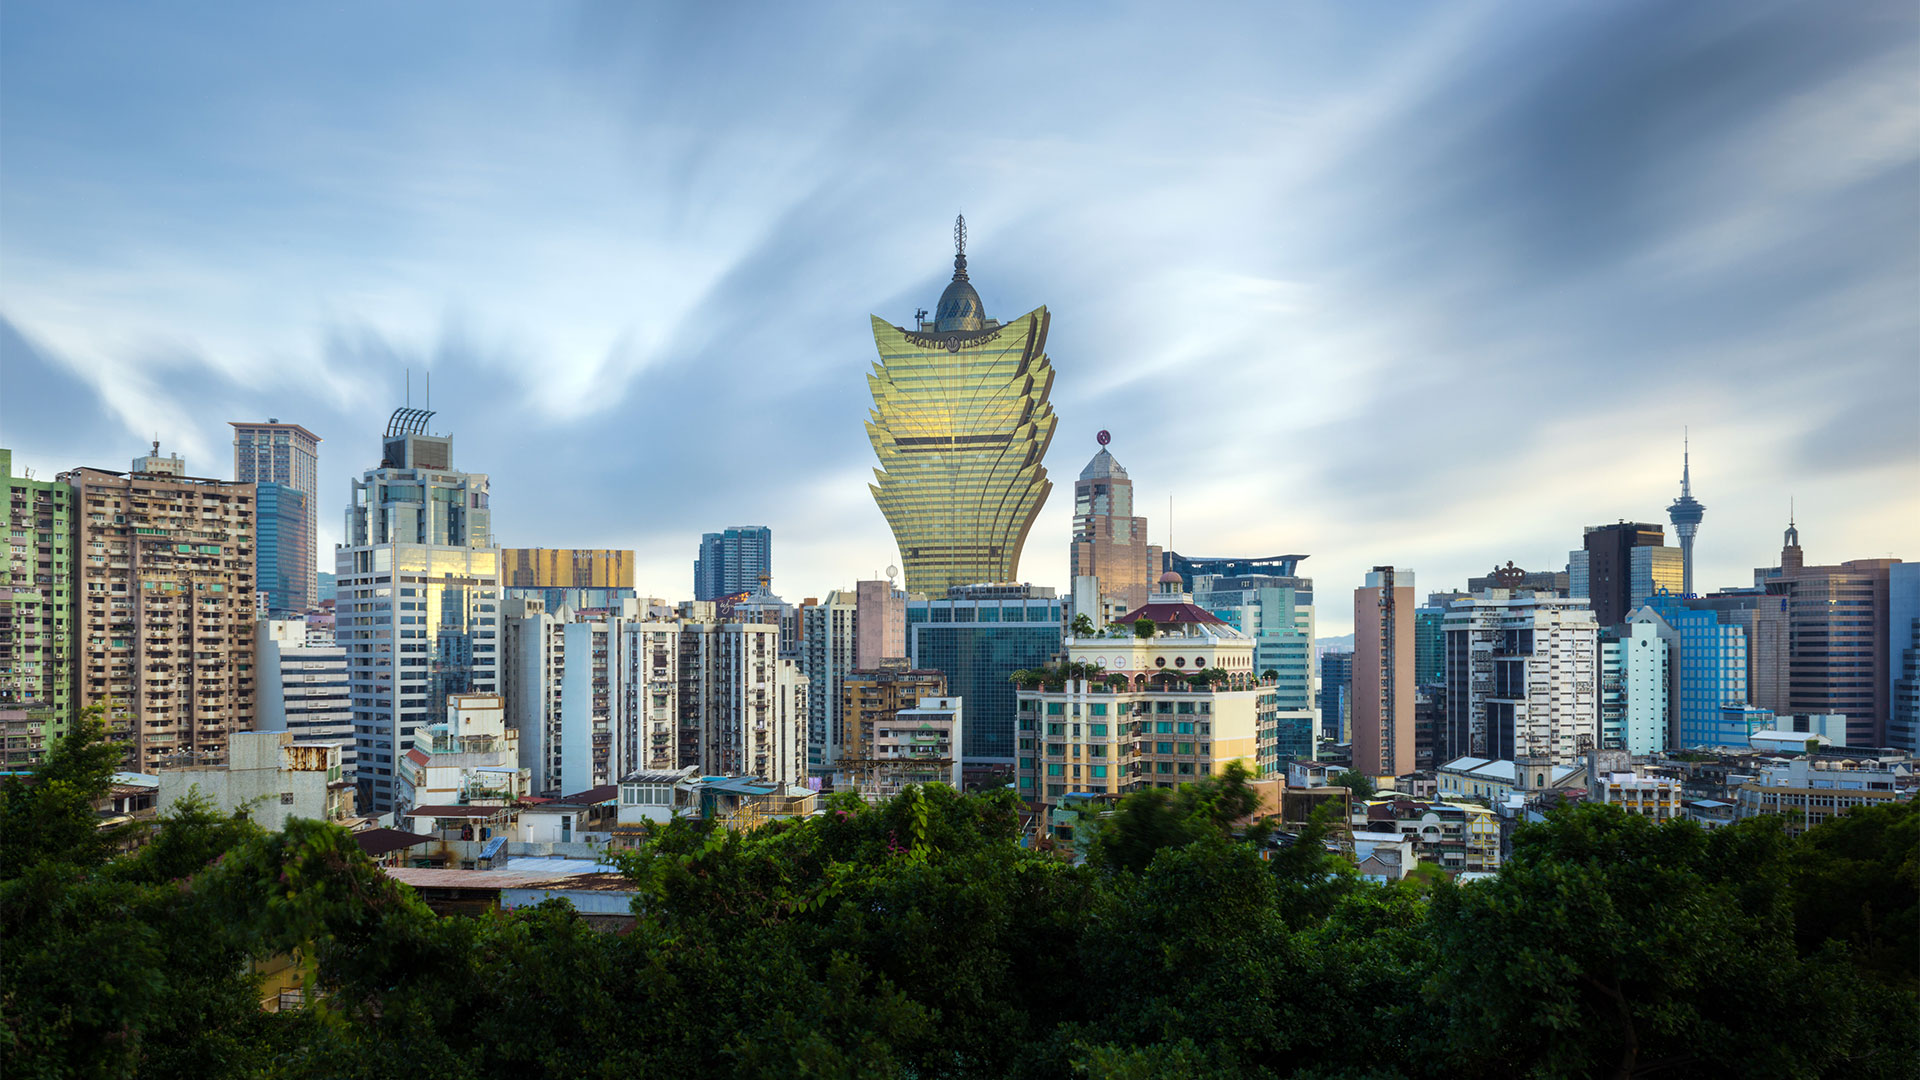 Macao, el paraíso asiático del juego, experimentó un fuerte aumento de su riqueza desde que se liberalizaron los juegos de azar en 2001. (Getty)